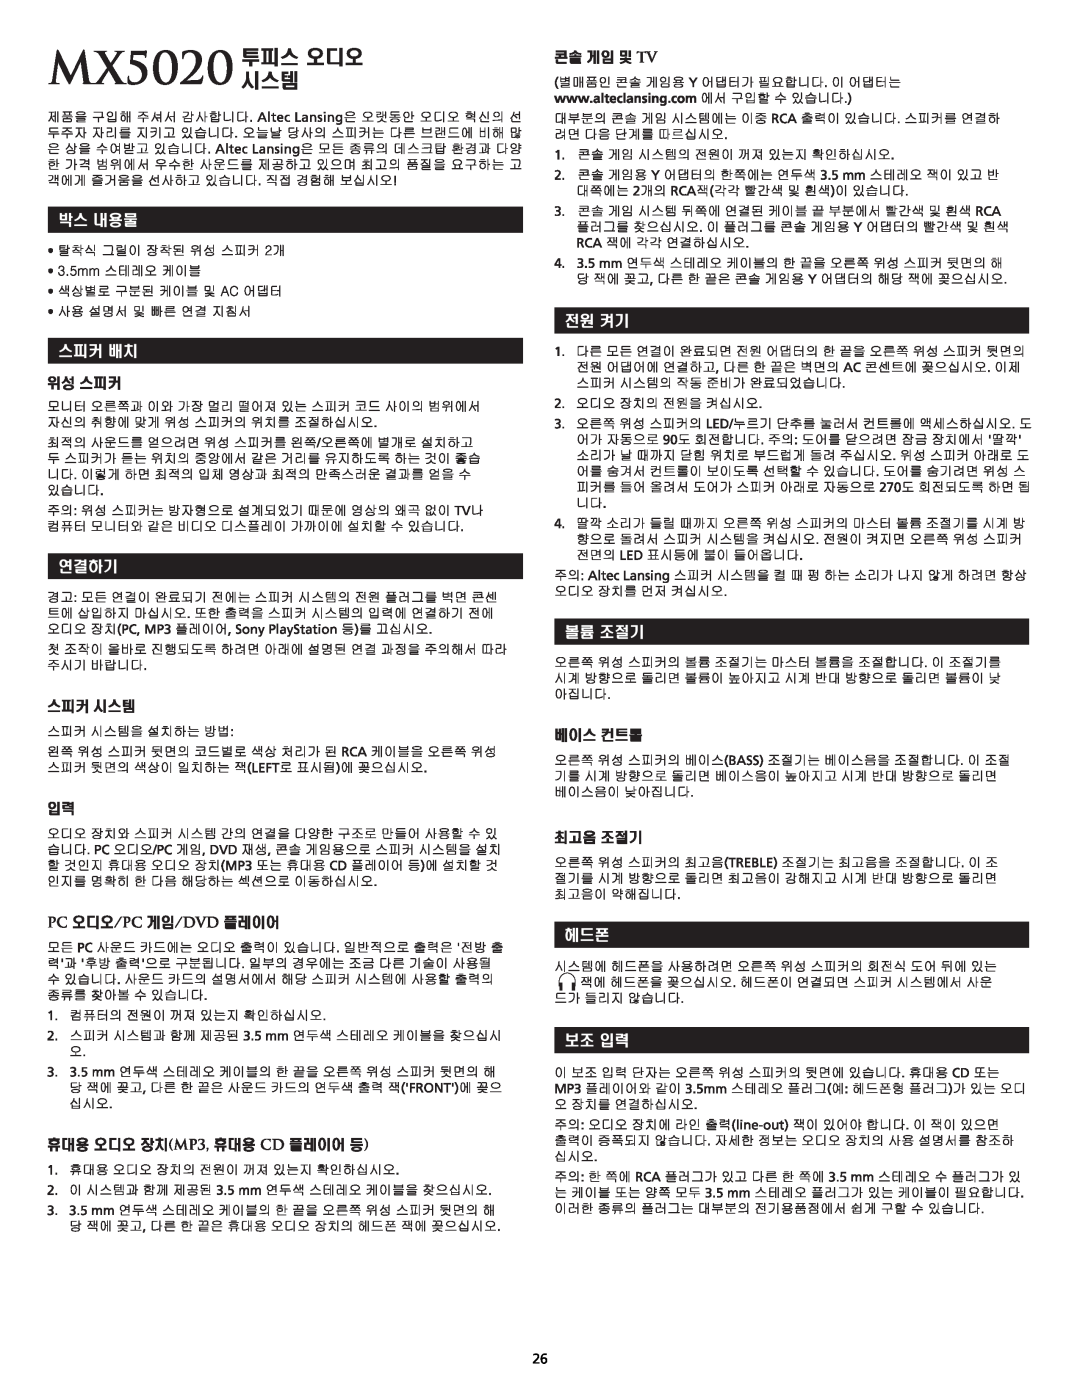 Altec Lansing MX5020 manual 